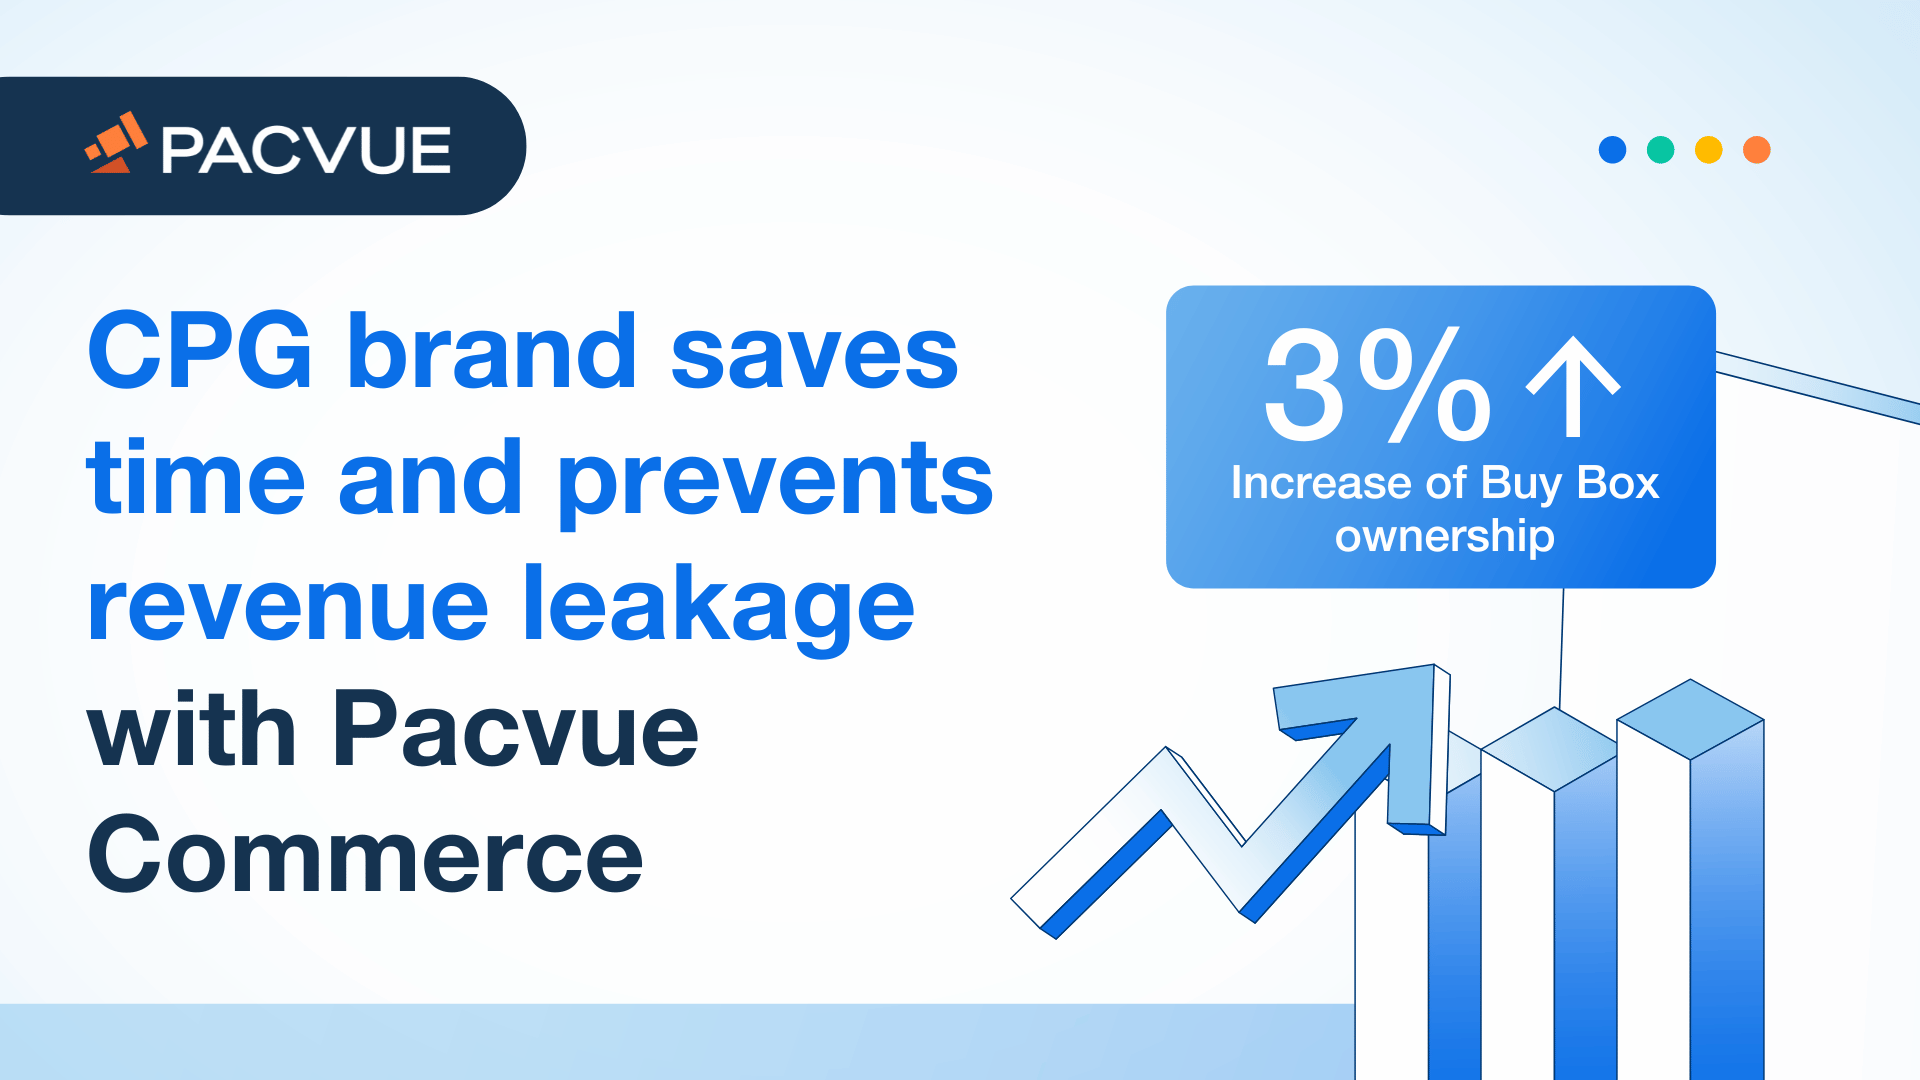 La marca CPG ahorra tiempo y evita la fuga de ingresos con Pacvue Commerce